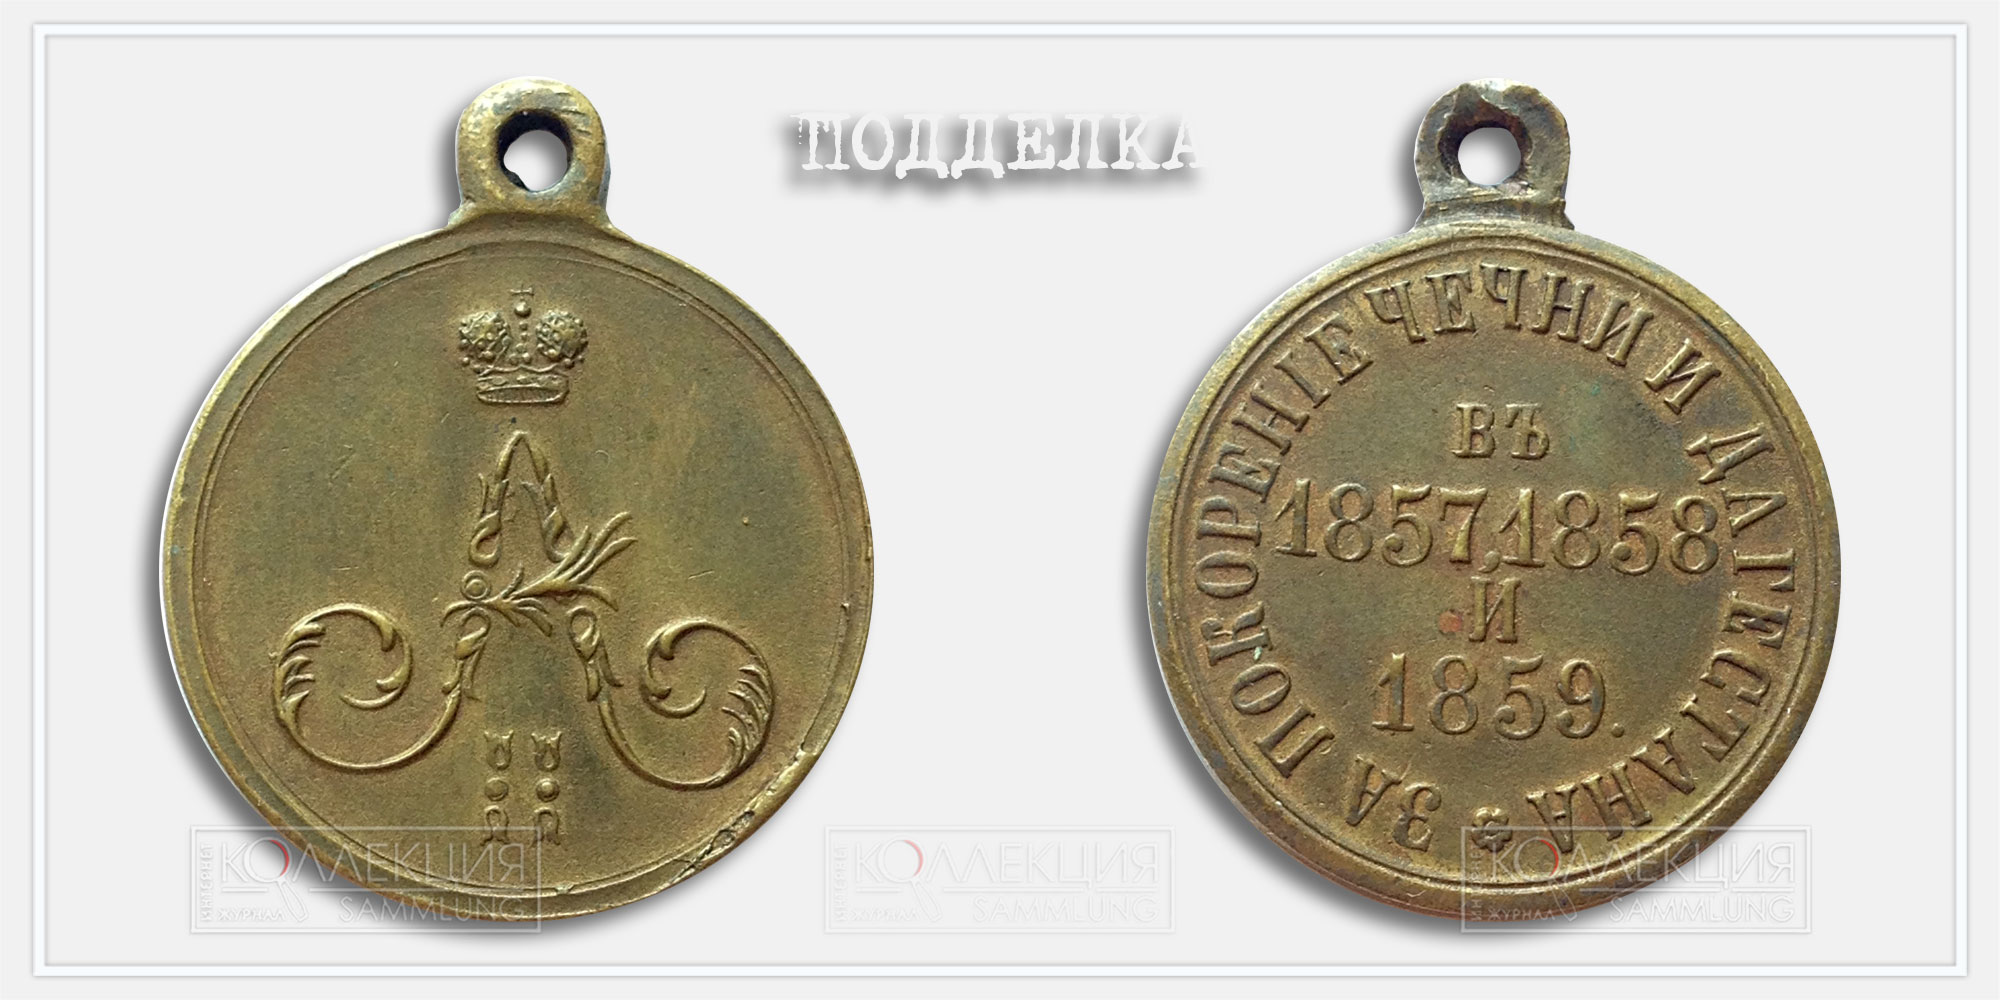 Медаль "За покорение Чечни и Дагестана 1857-1859" (копия)